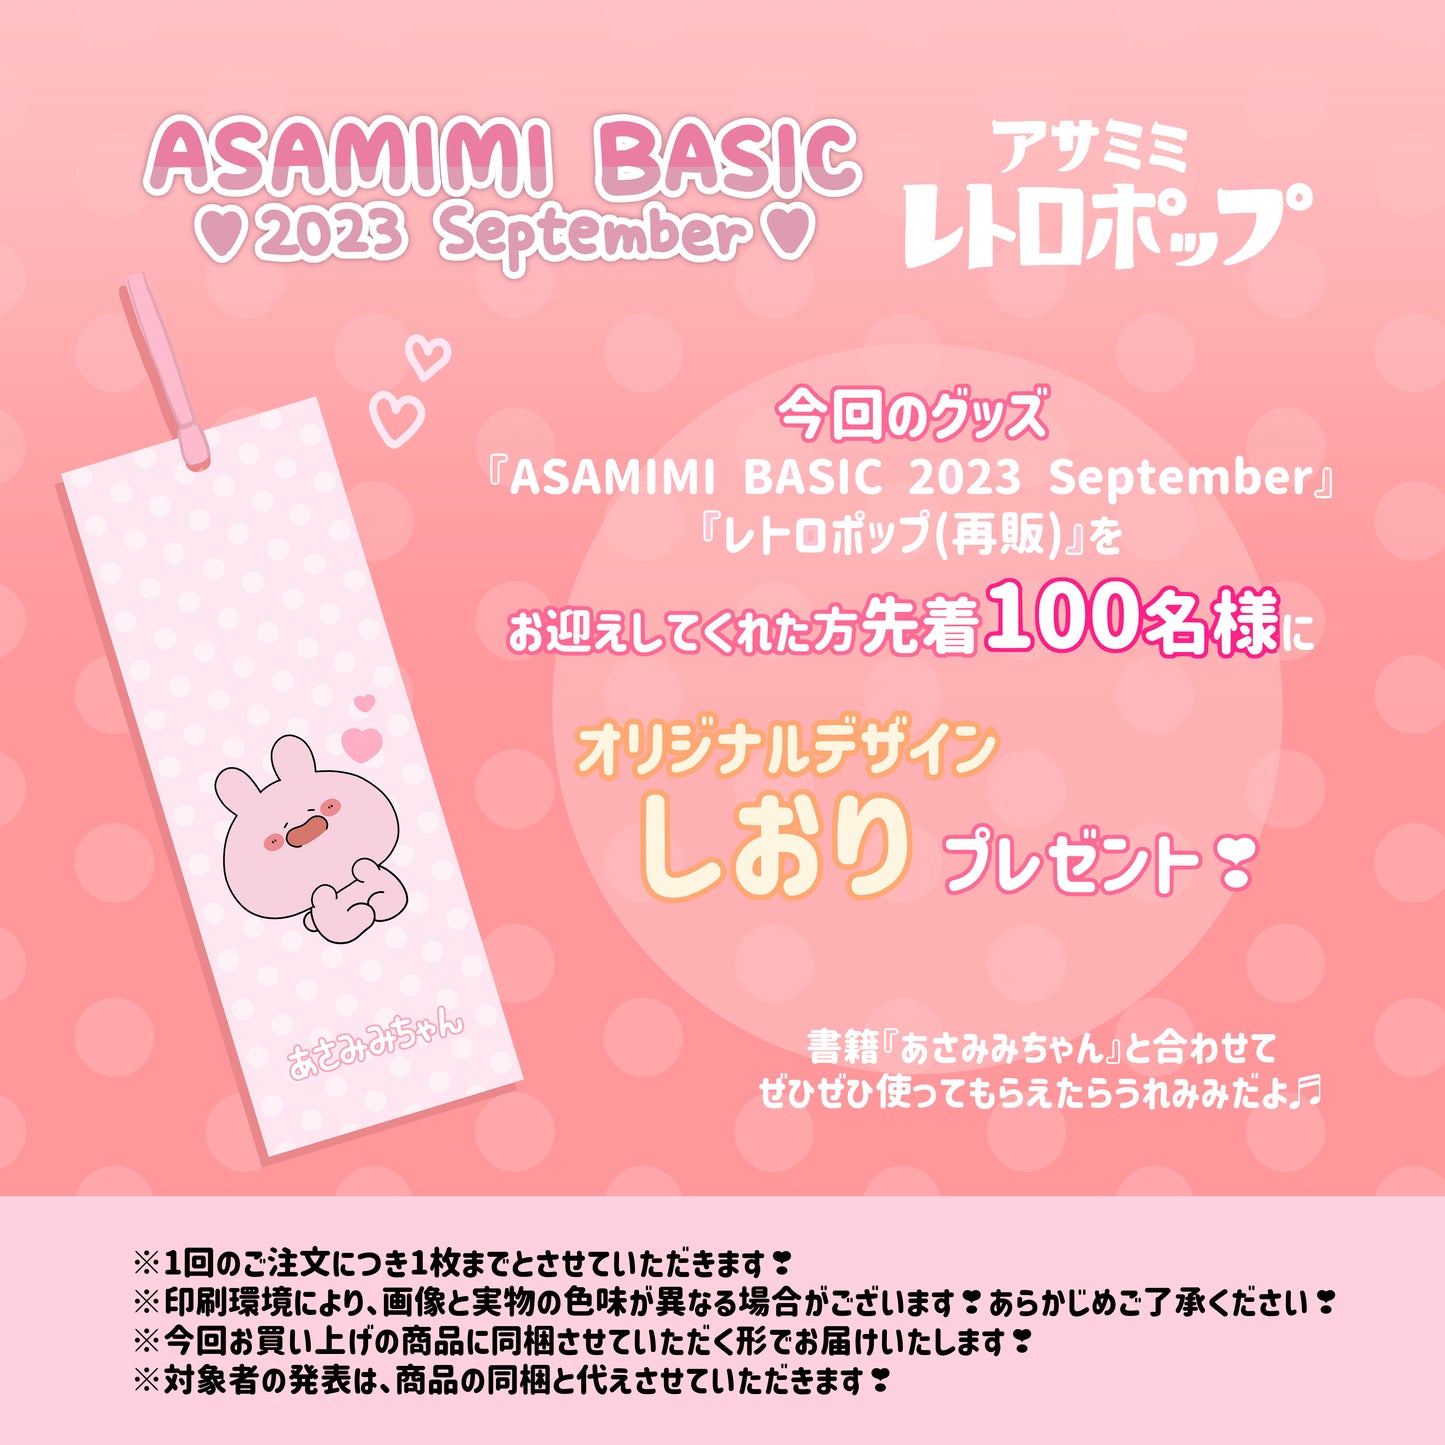 [Asamimi-chan] Nail show pose! 2WAY nail clipper (ASAMIMI BASIC 2023 September) [shipped in mid-November]